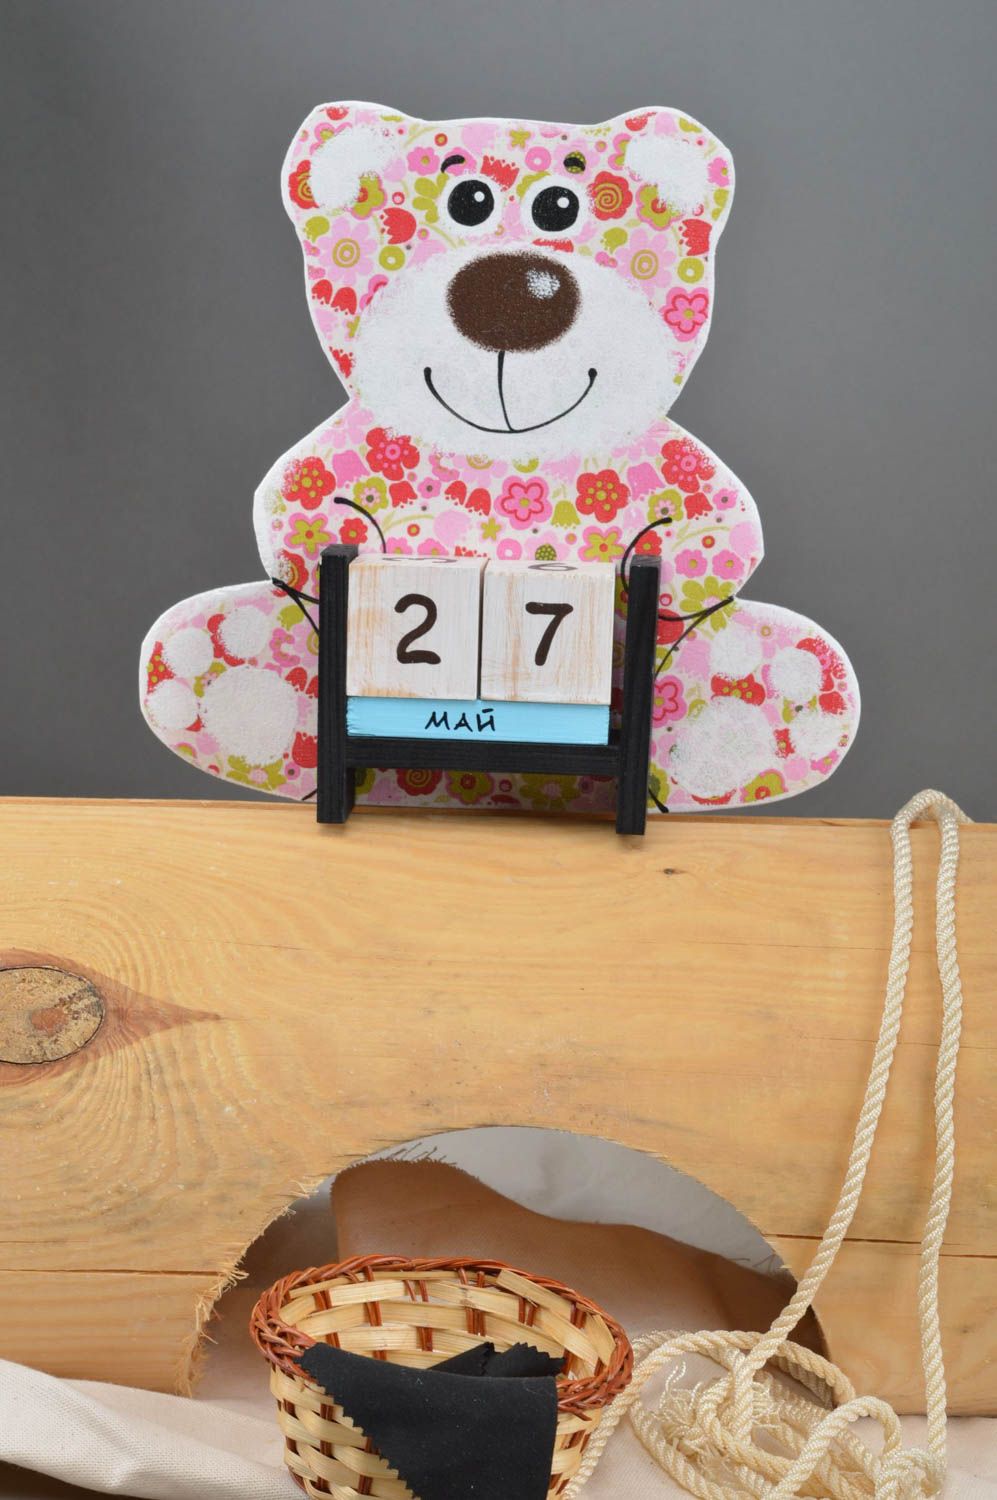 Милый календарь в виде медведя который держит кубики детский декупаж хенд мейд фото 1